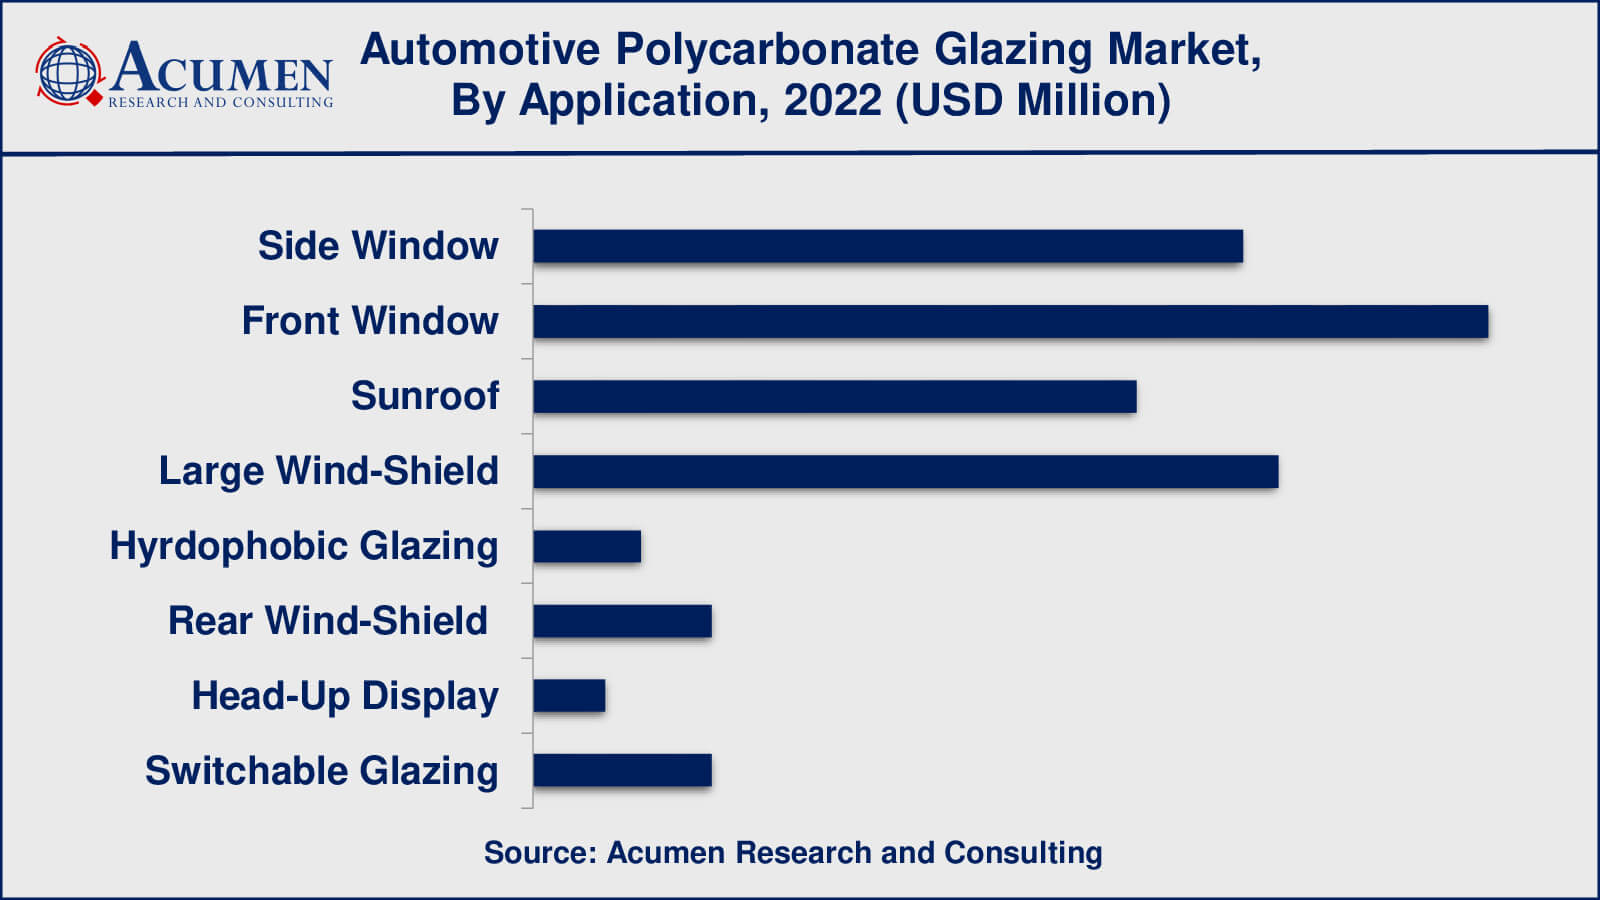 Automotive Polycarbonate Glazing Market Insights